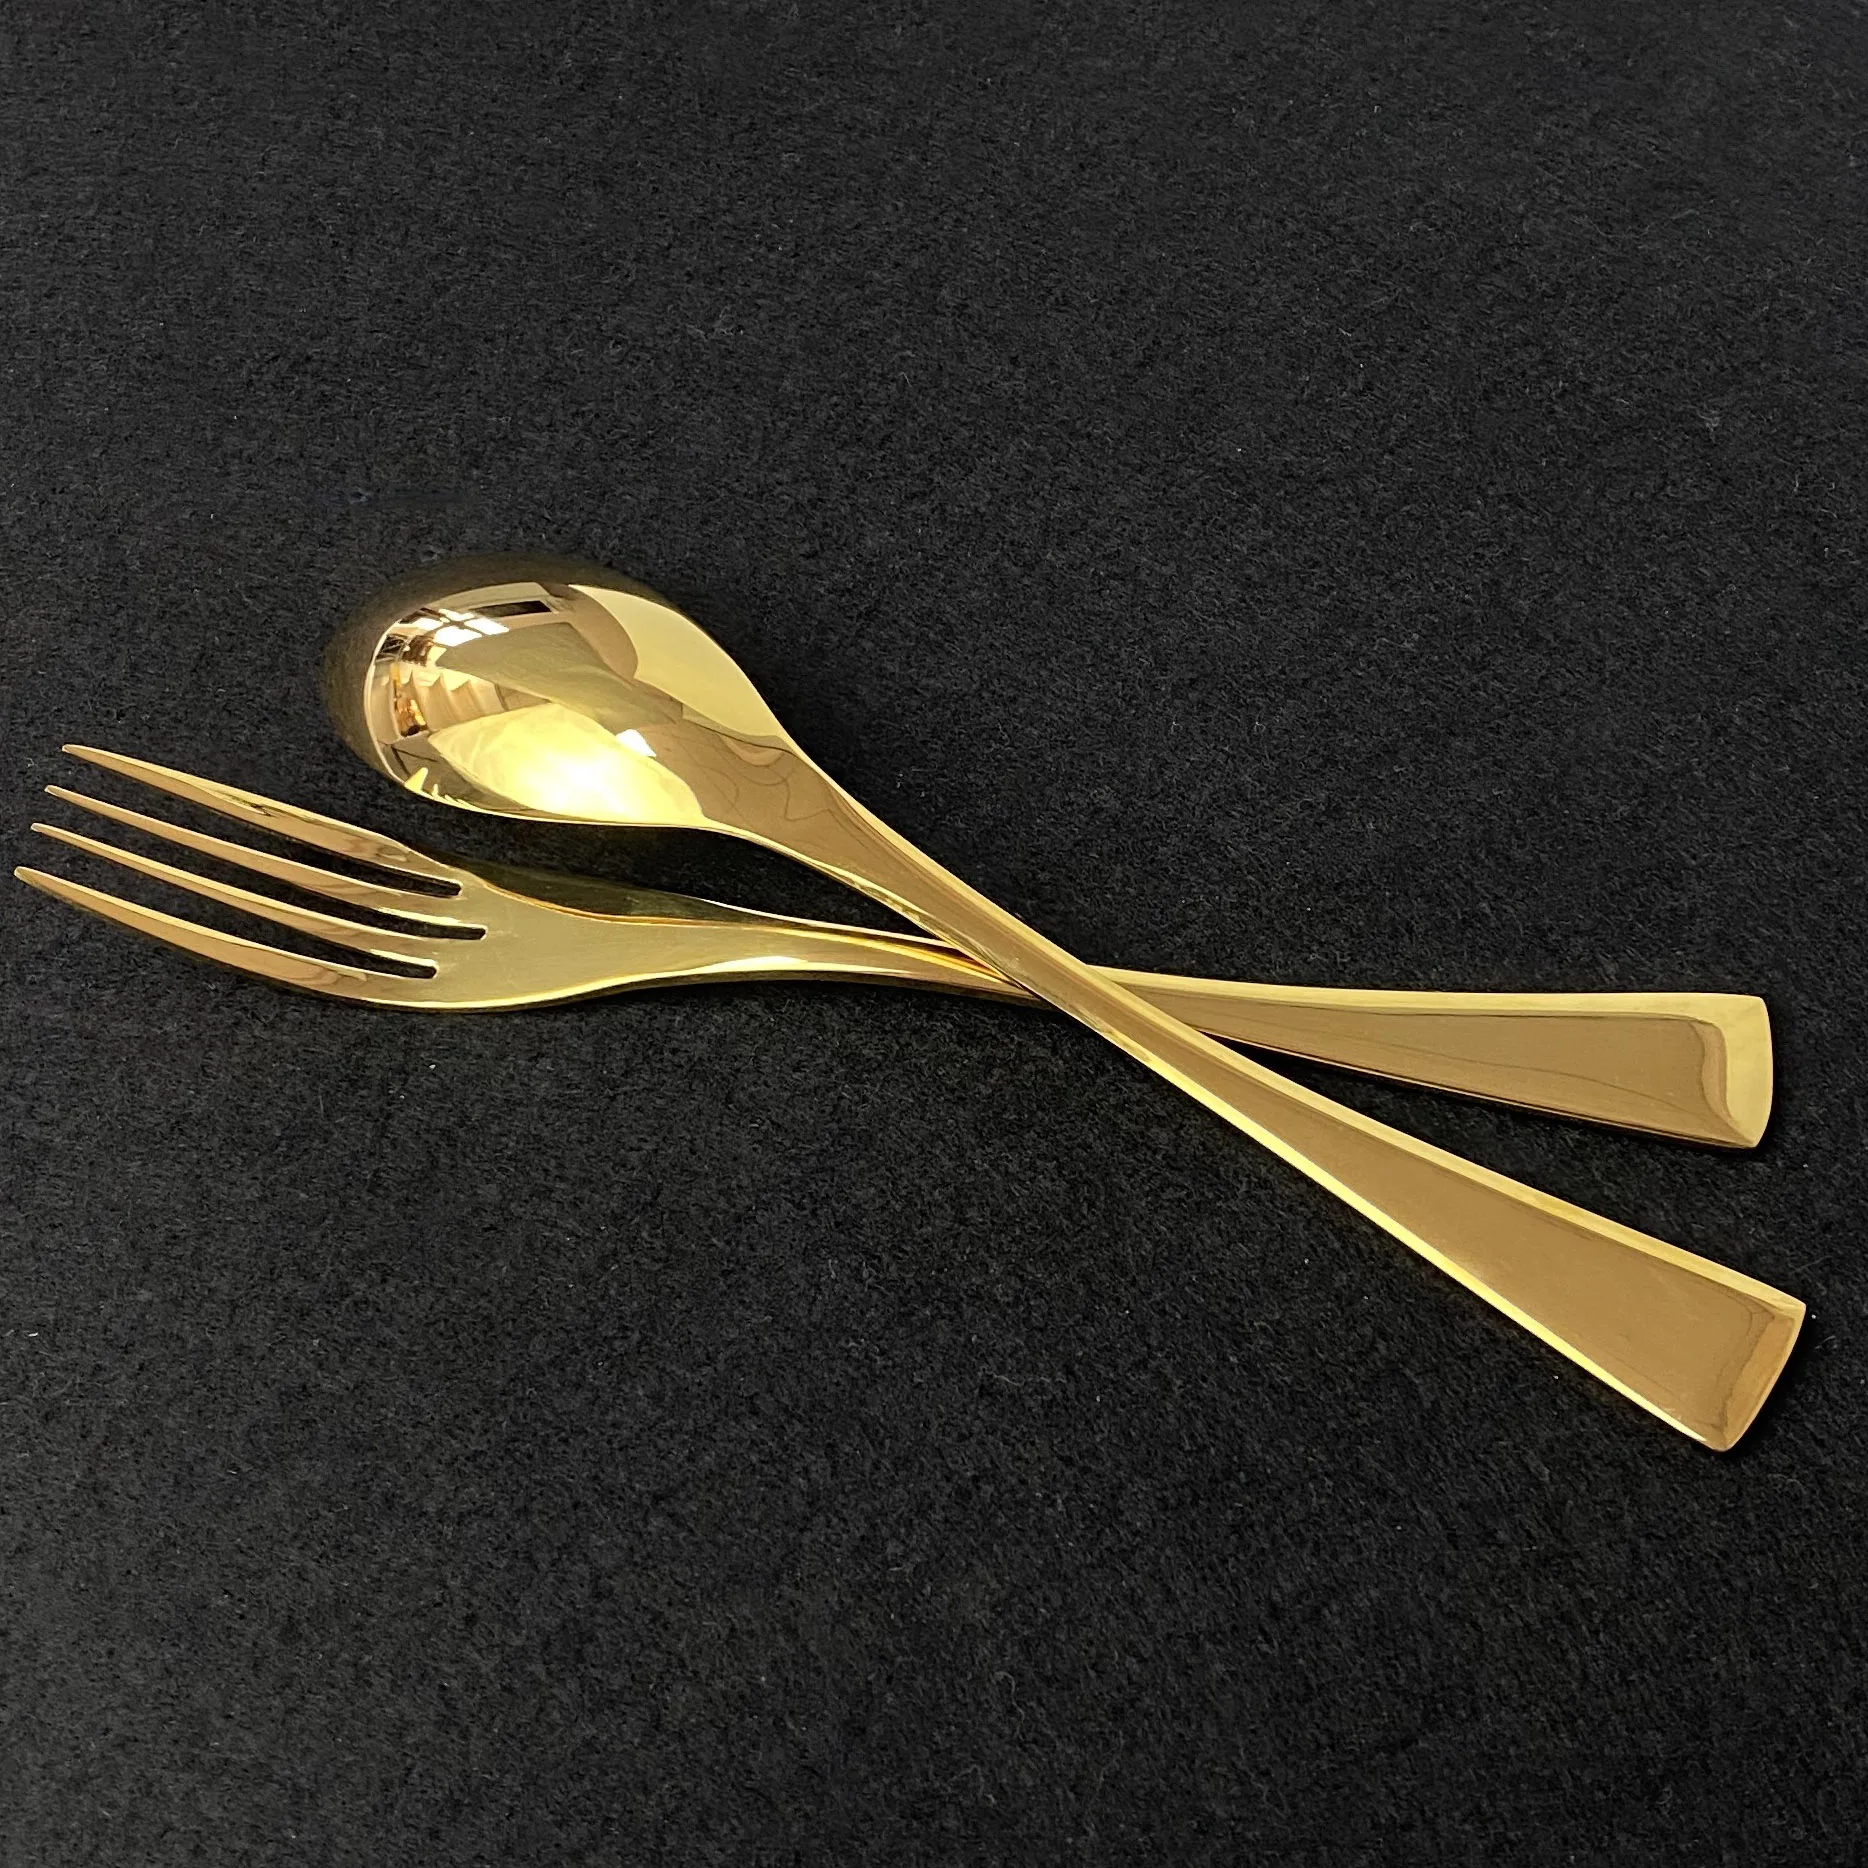 

24Pcs Gold Western Dinnerware Cutlery Set Flatware Steak Knife Fork Coffee Teaspoon 304 Stainless Steel Home Dinner Tableware